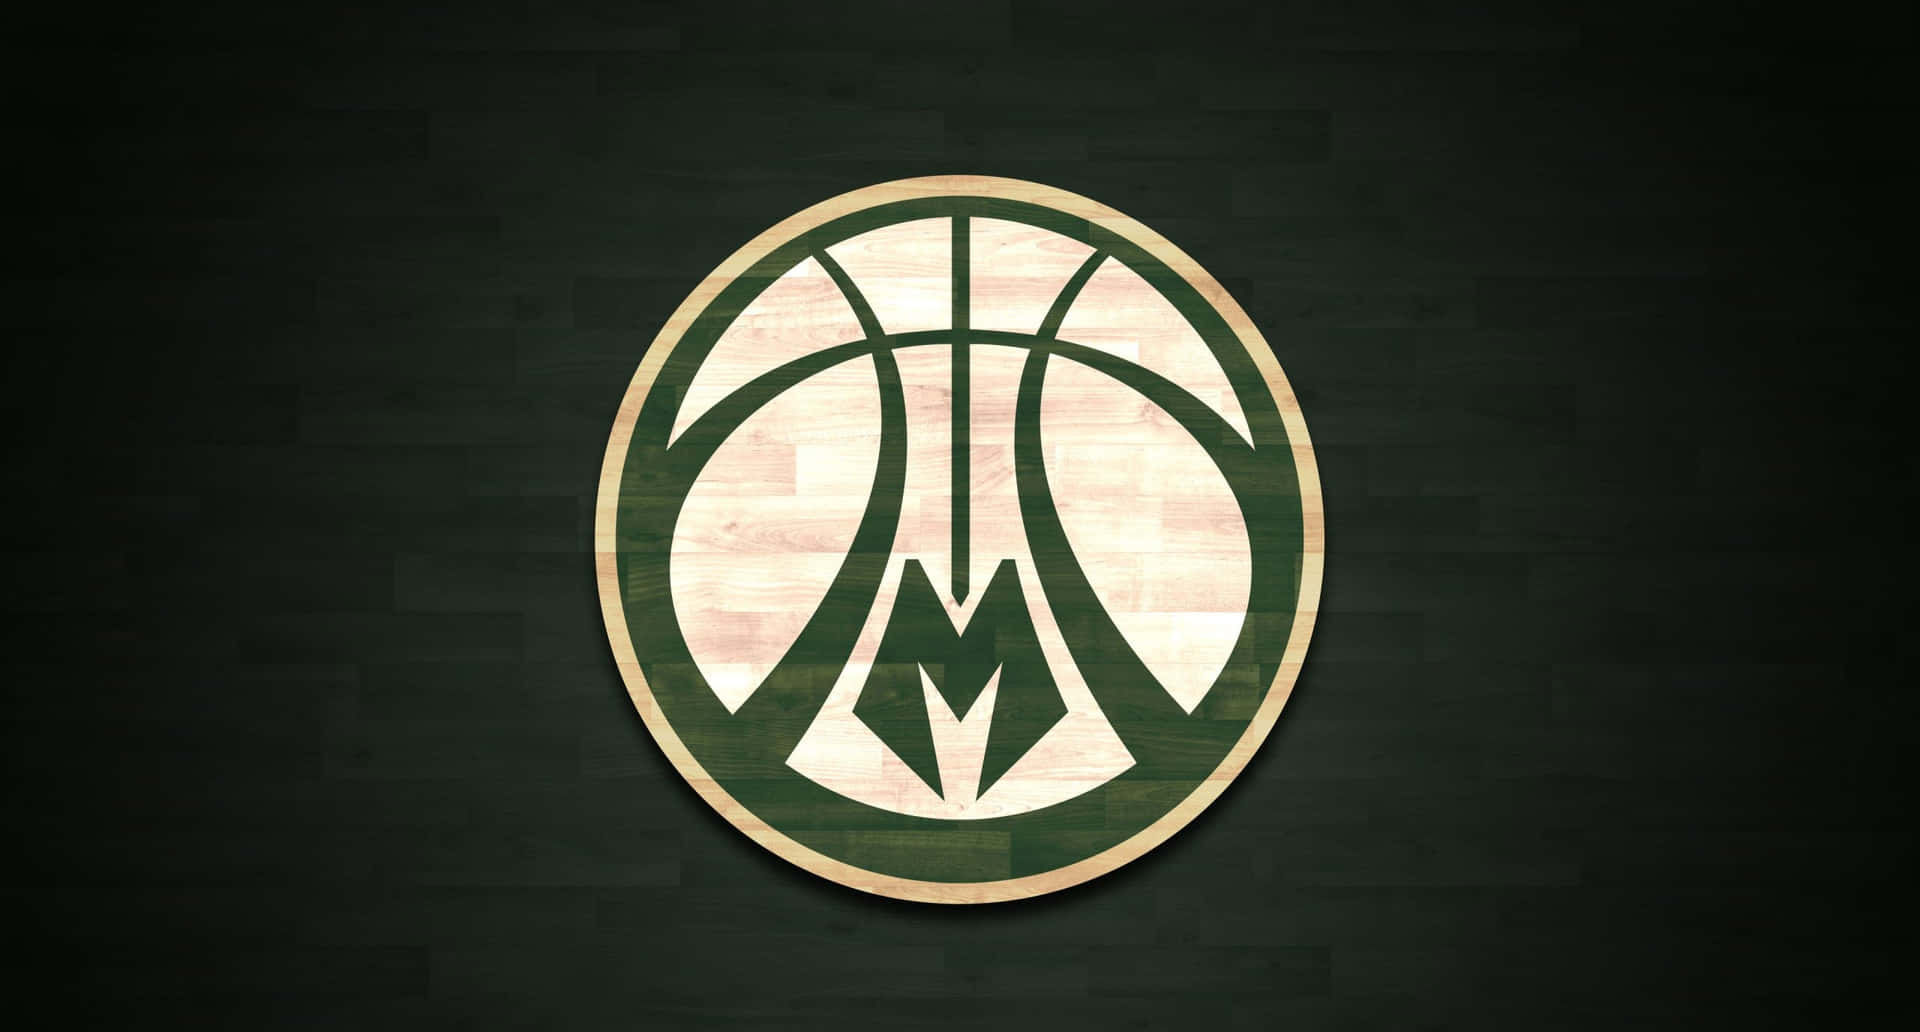 Detikoniska Logotypen För Milwaukee Bucks Nba Basketlag. Wallpaper